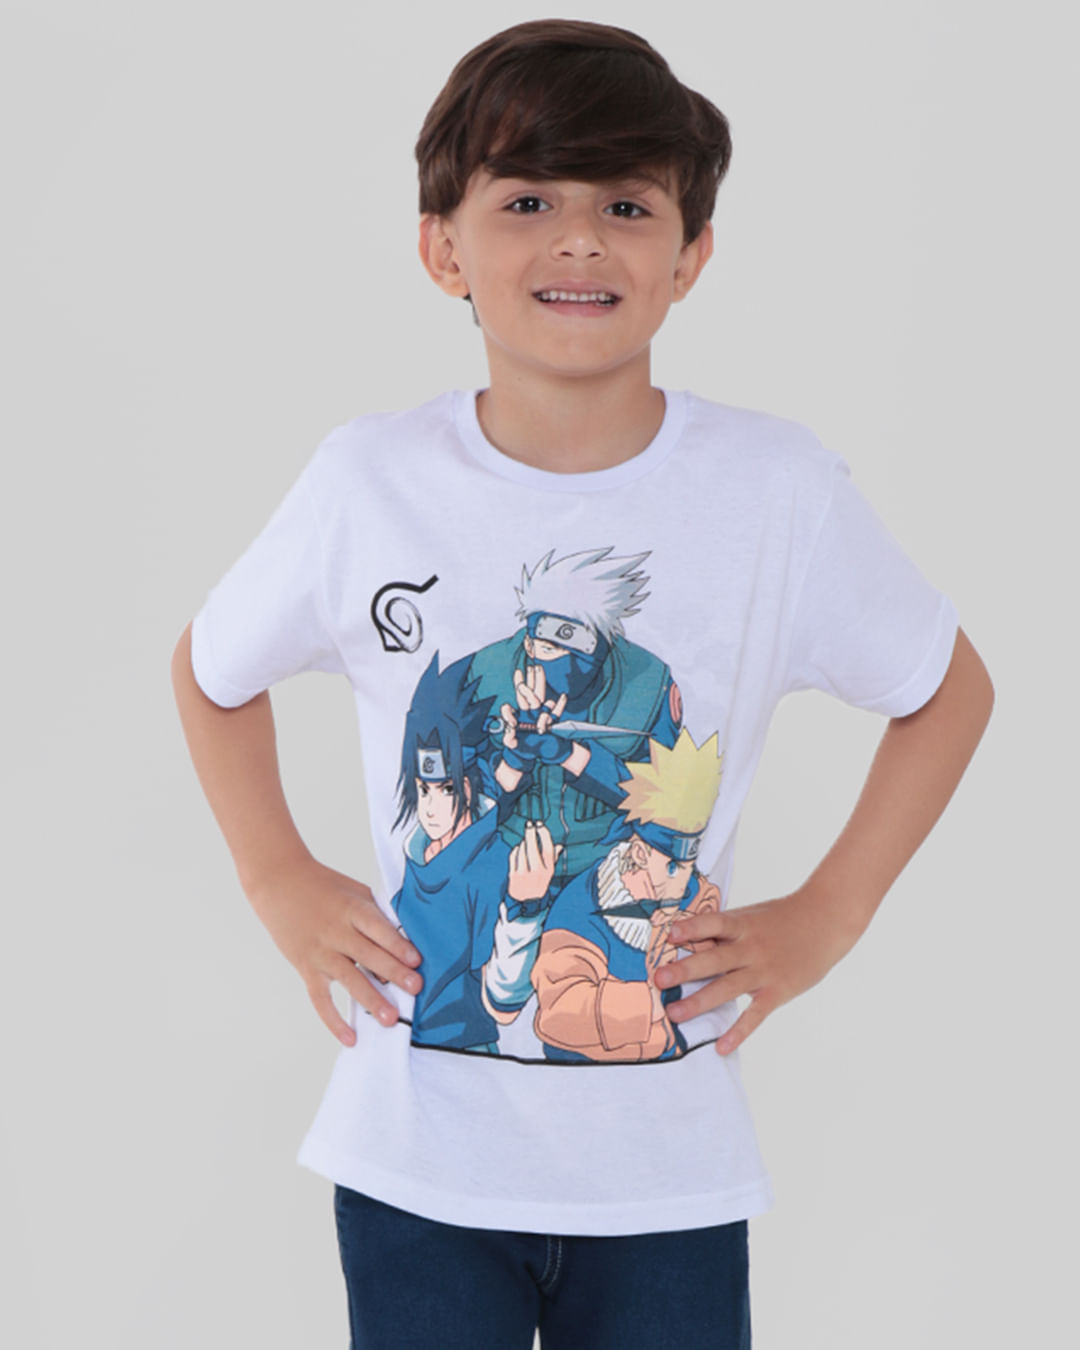 Kids Boys Roblox Imprimir T-shirt de manga curta Verão Casual Tee Tops  Roupas